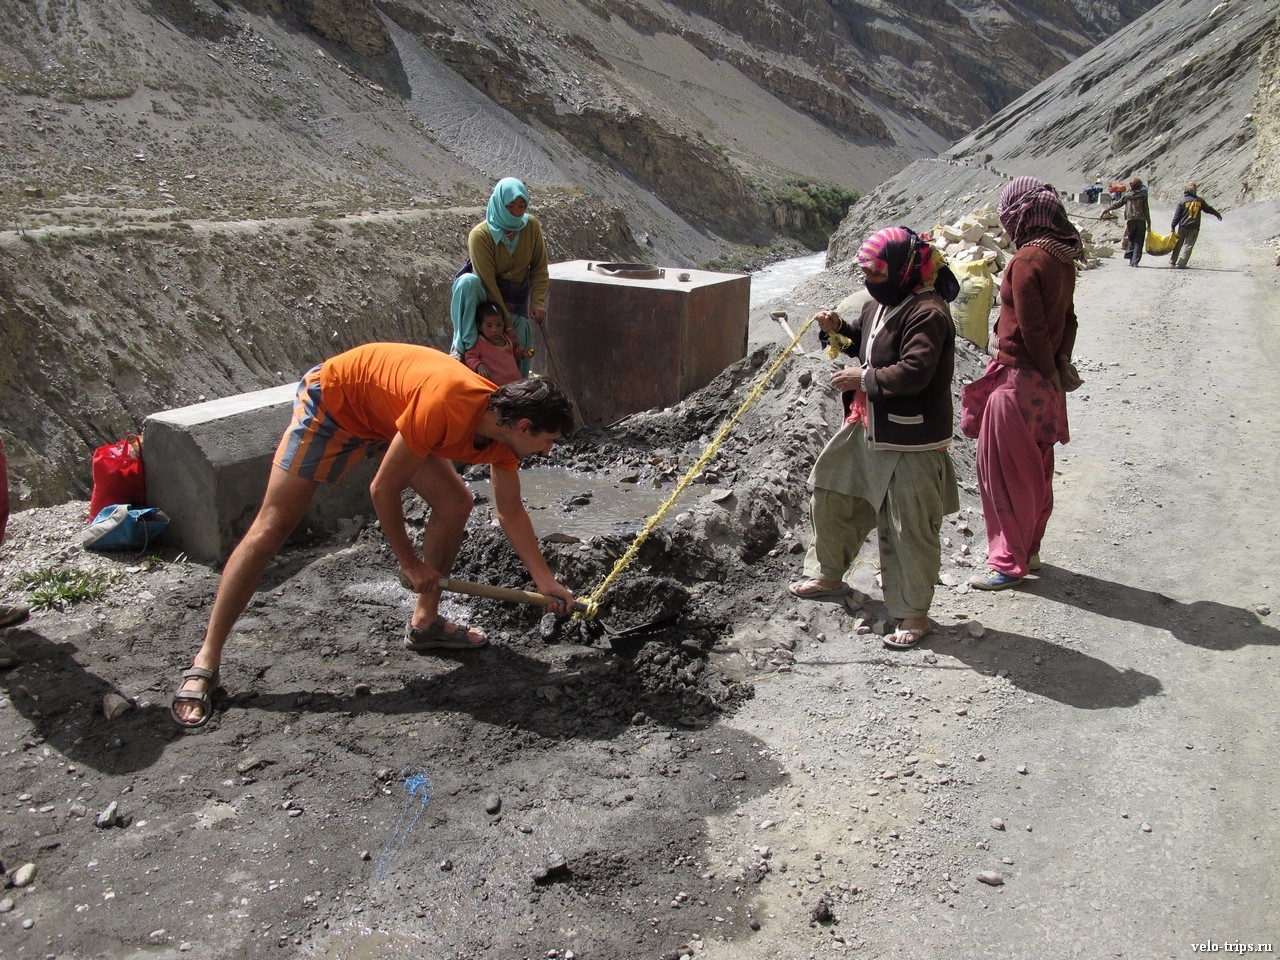 Repairing road along Spiti river in Himalaya